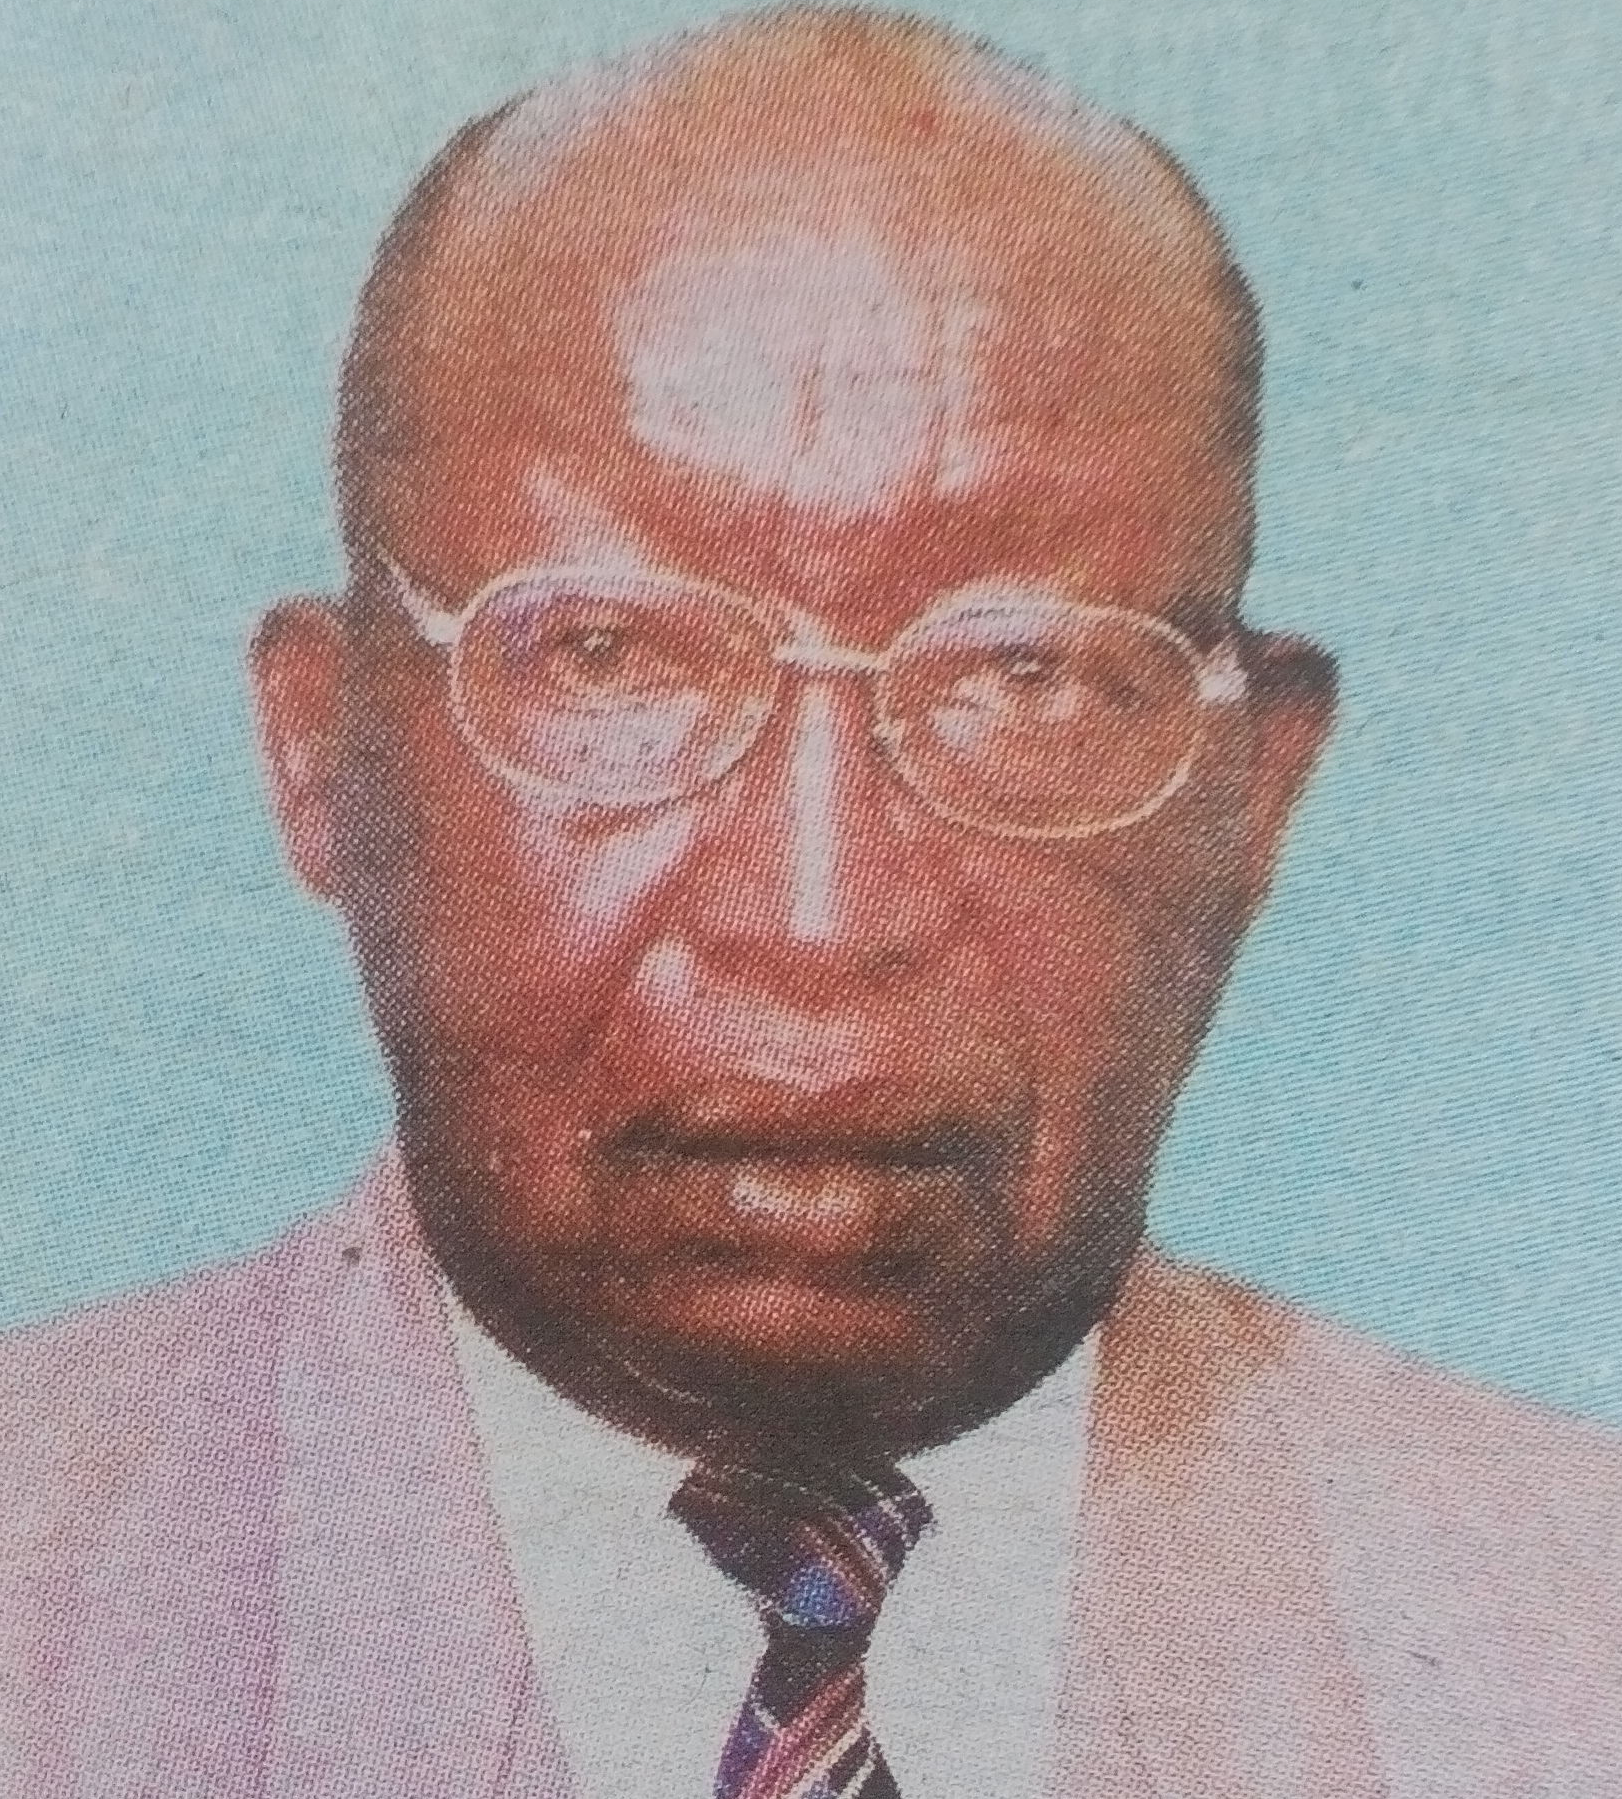 Obituary Image of James Kimani Watenga